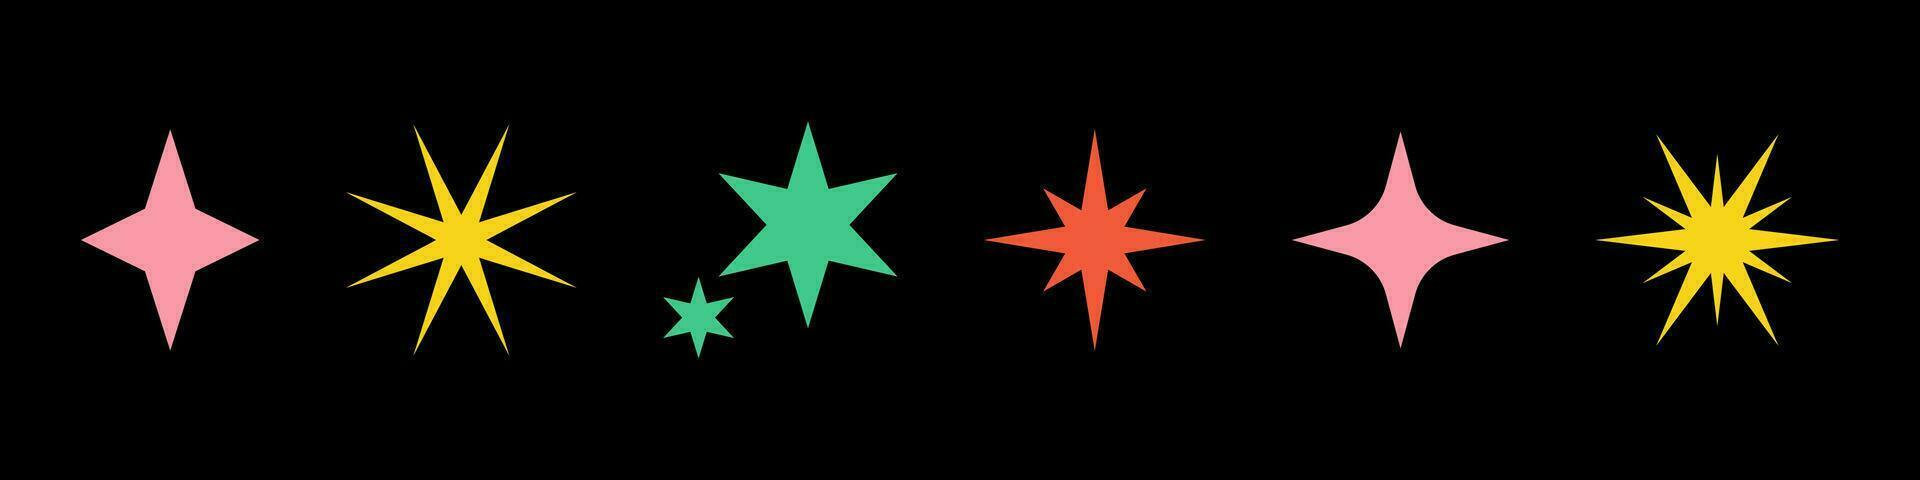 Vektor retro einstellen von Acid futuristisch funkeln Symbole. Sammlung von bunt Star Formen. y2k abstrakt Sterne. abstrakt cool scheinen 90er Jahre Zeichen zum Poster oder Banner Design.